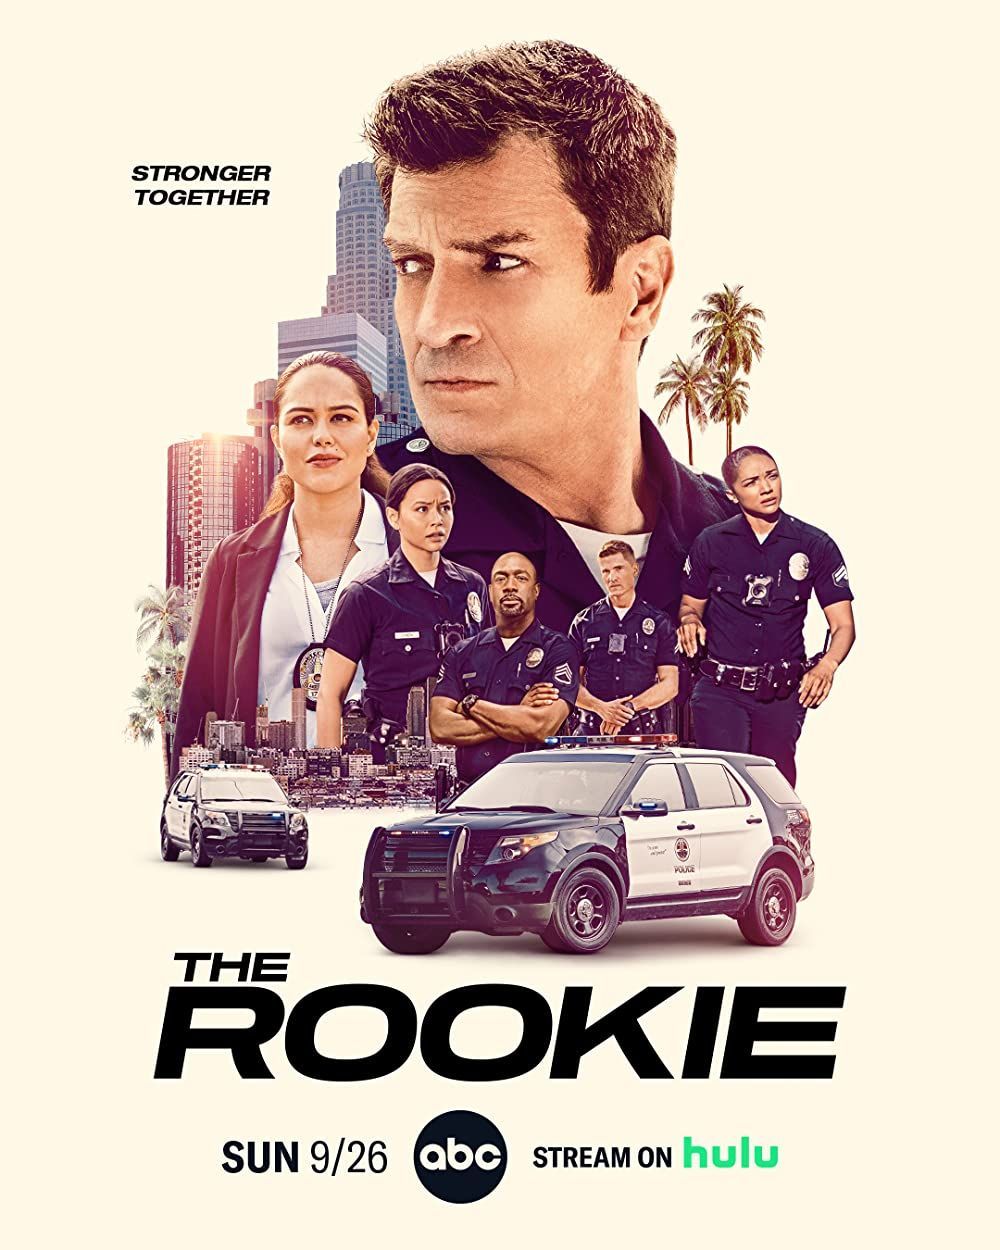 'The Rookie' on Hulu